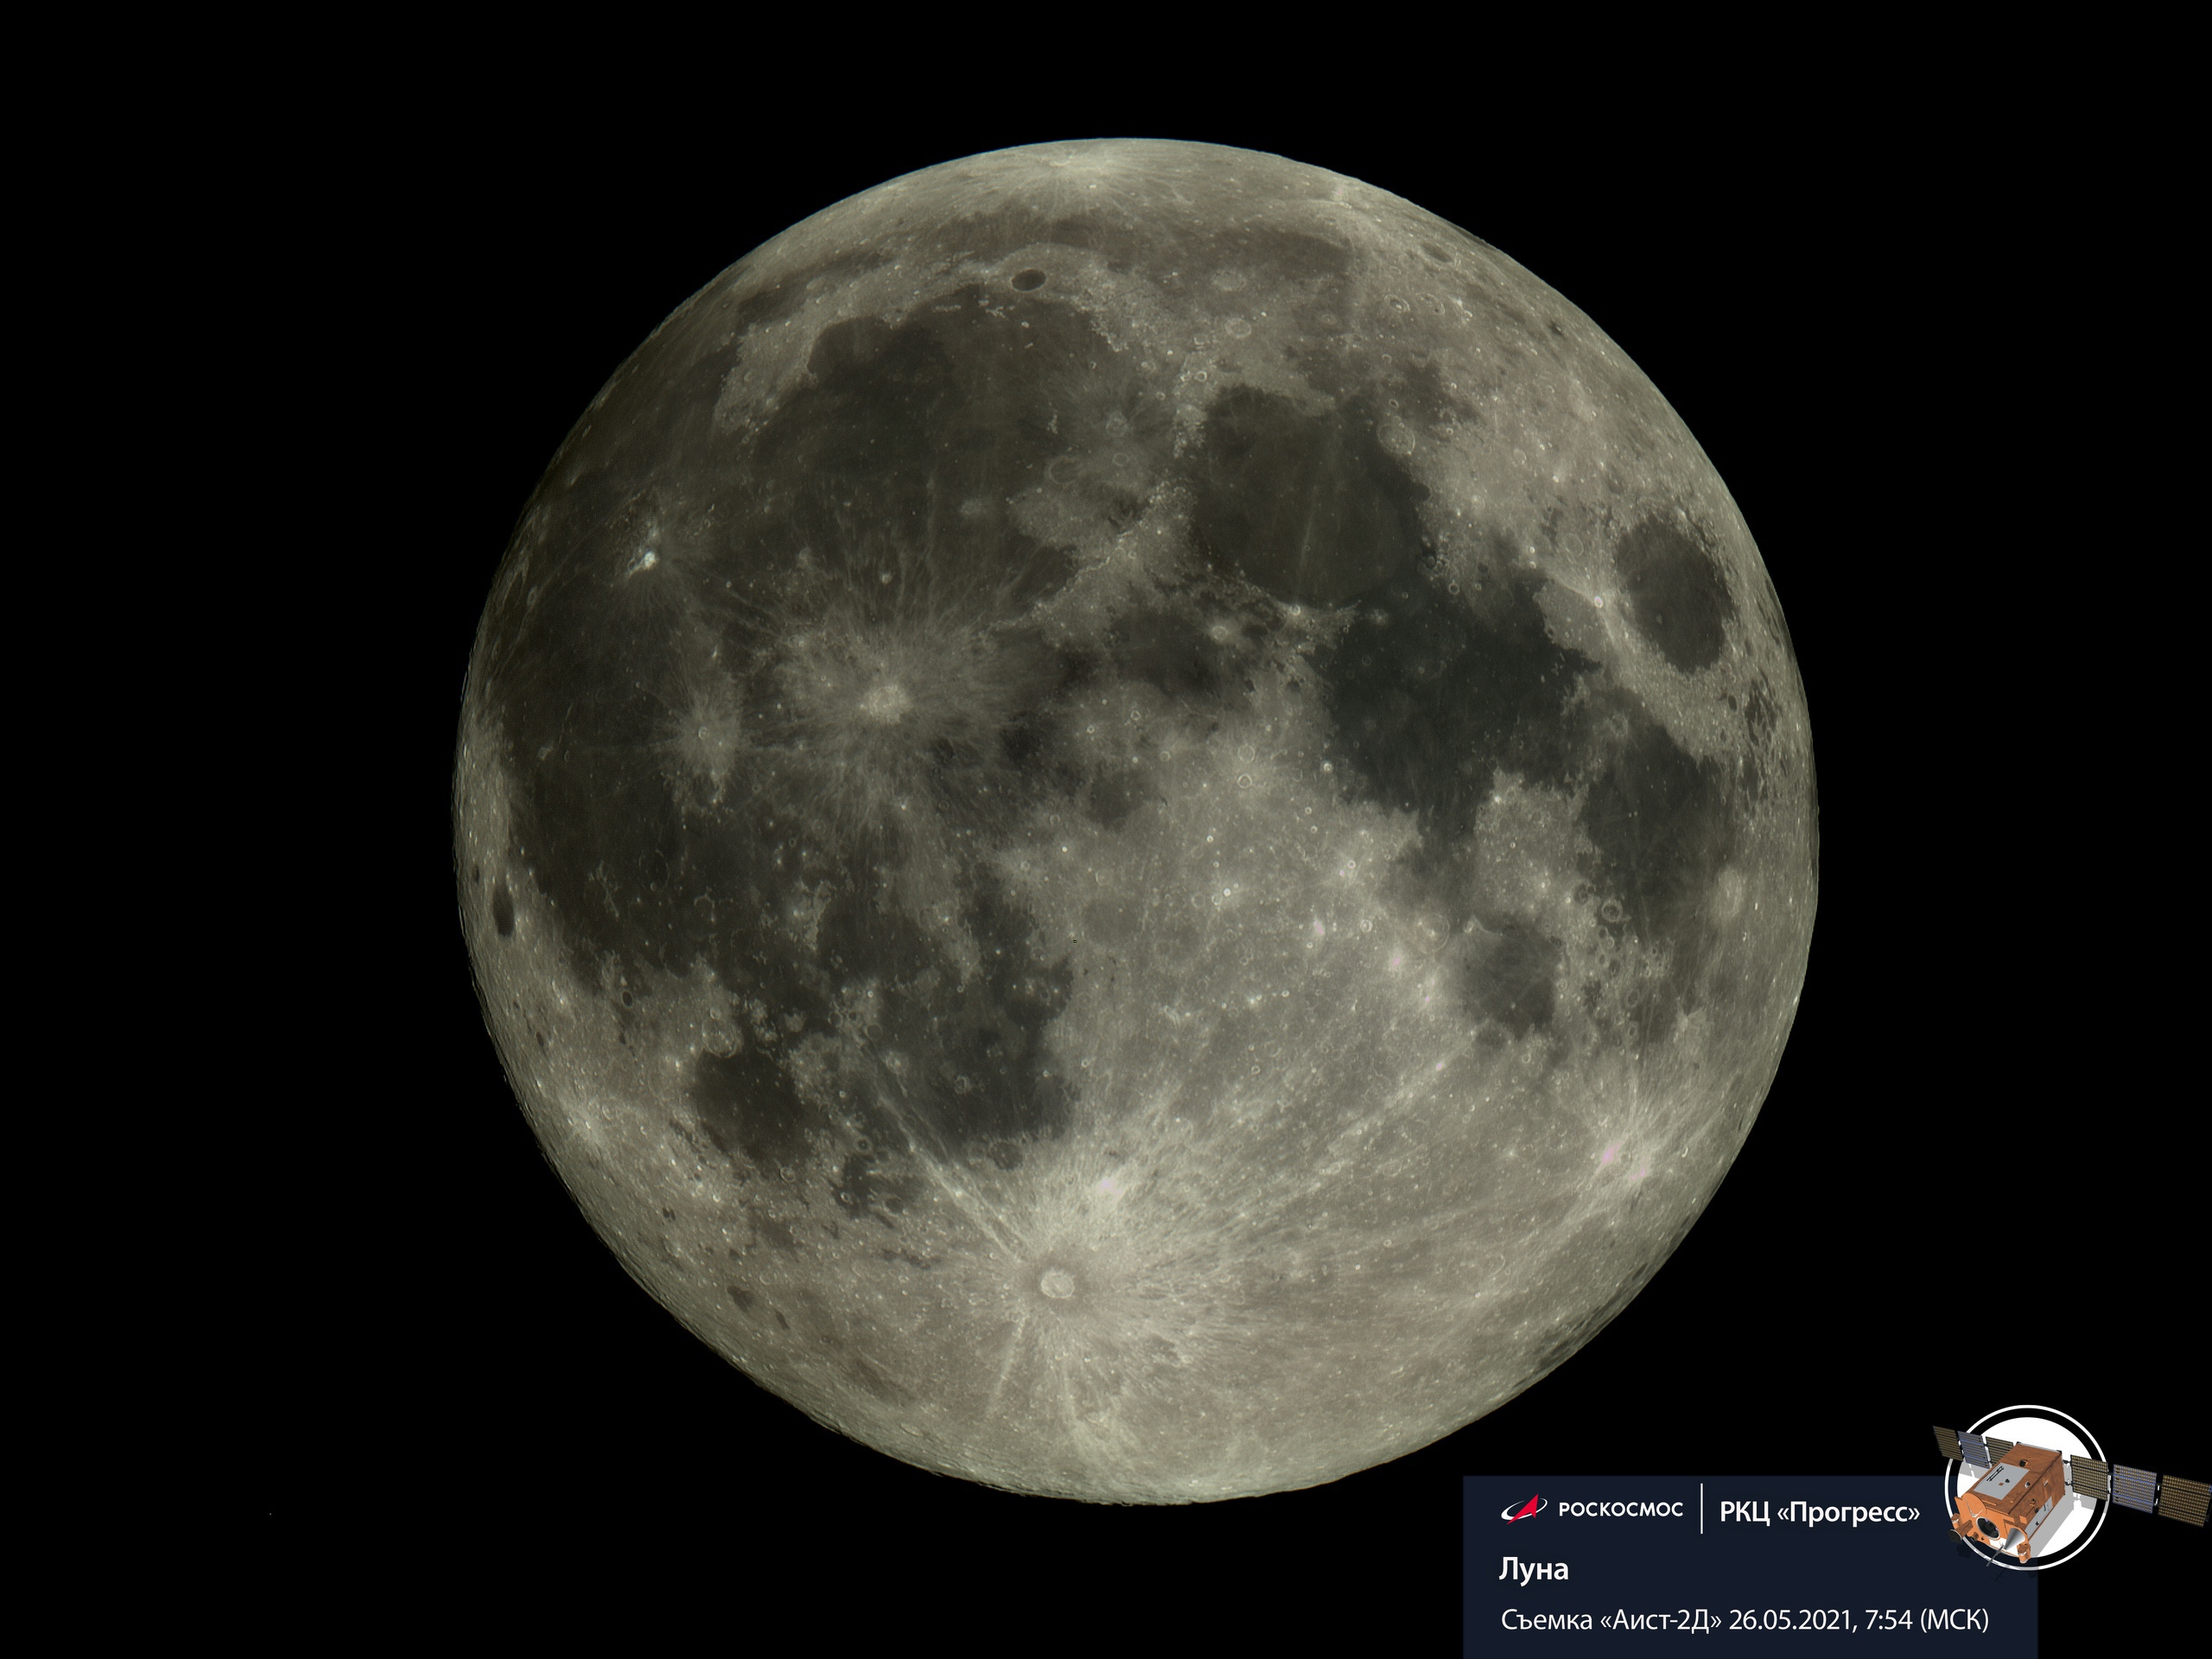 Полная Луна подошла к Земле на расстояние ближе 362 тысячи километров